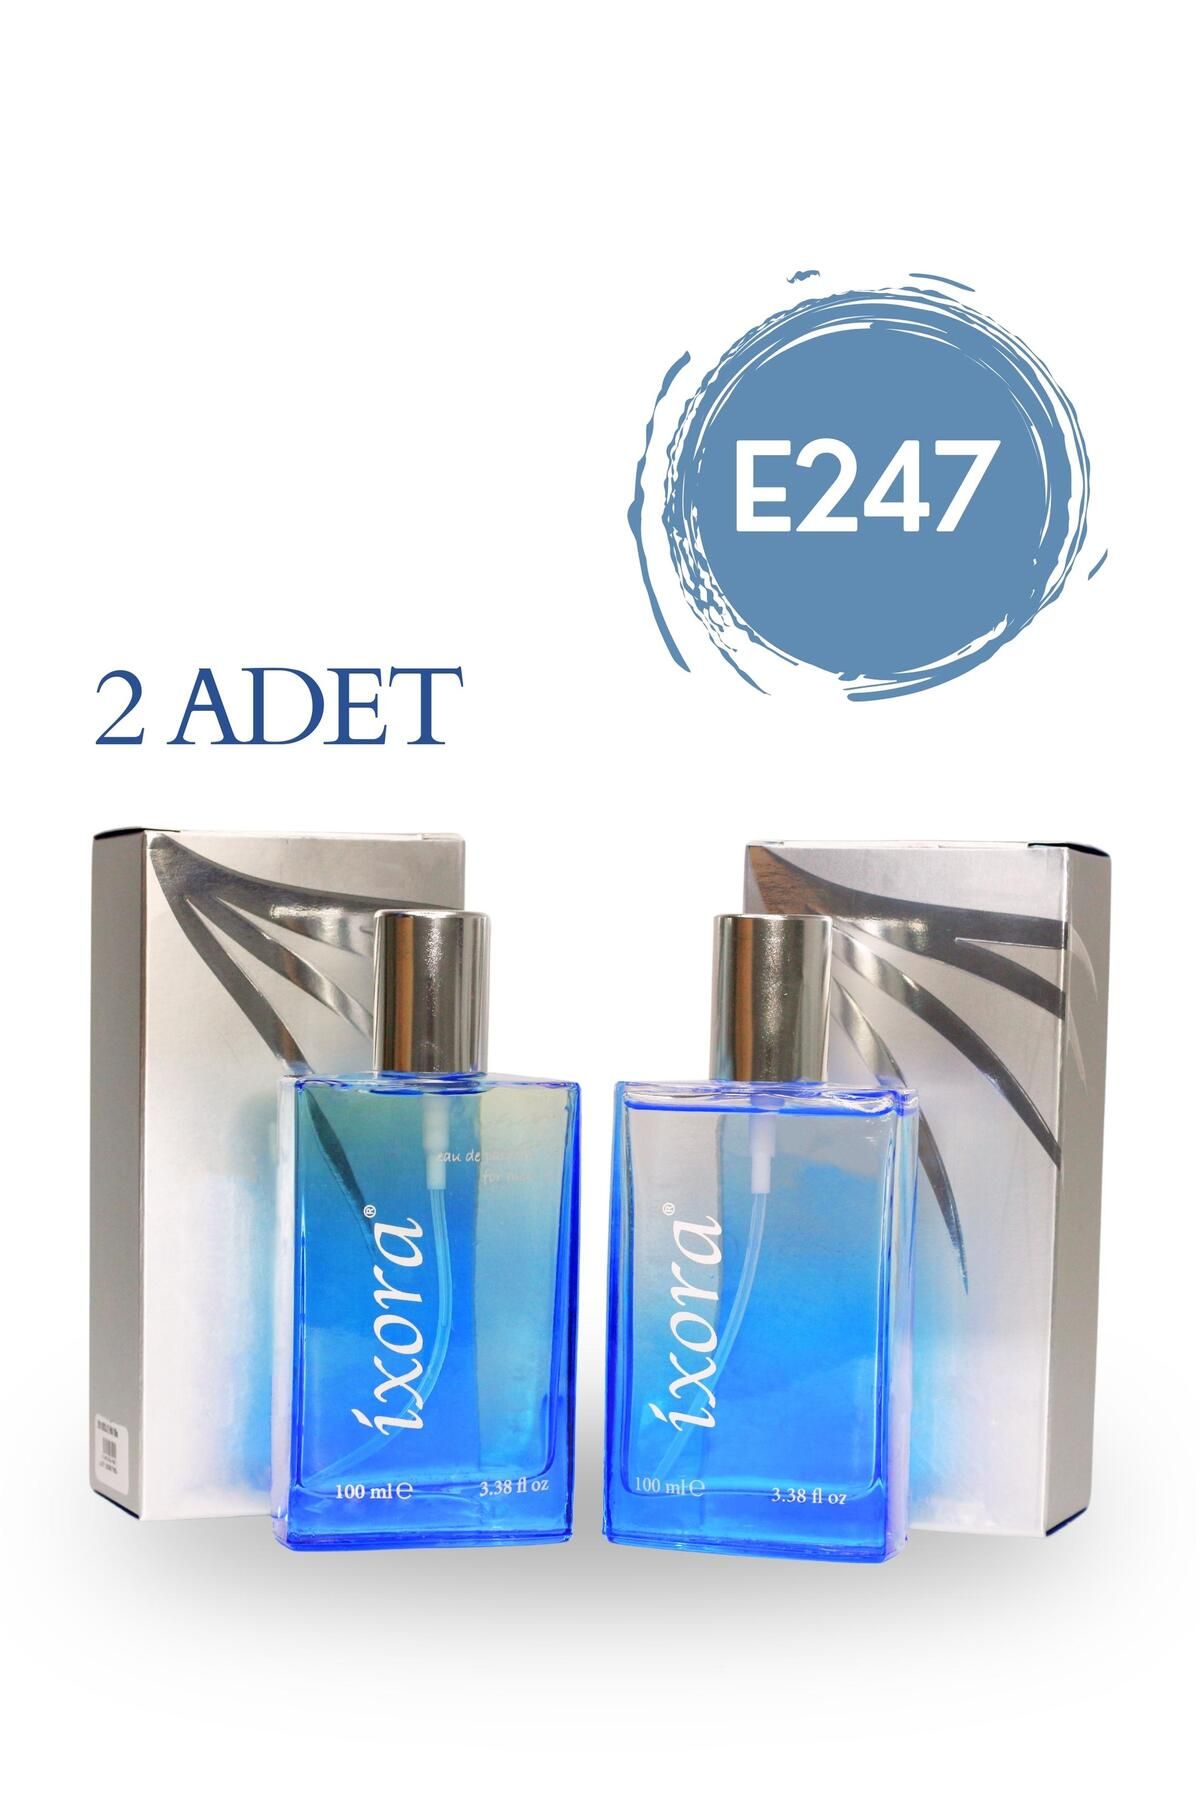 Ixora E247x2 (2 adet) Gallant Erkek Parfüm 100 ml Edp